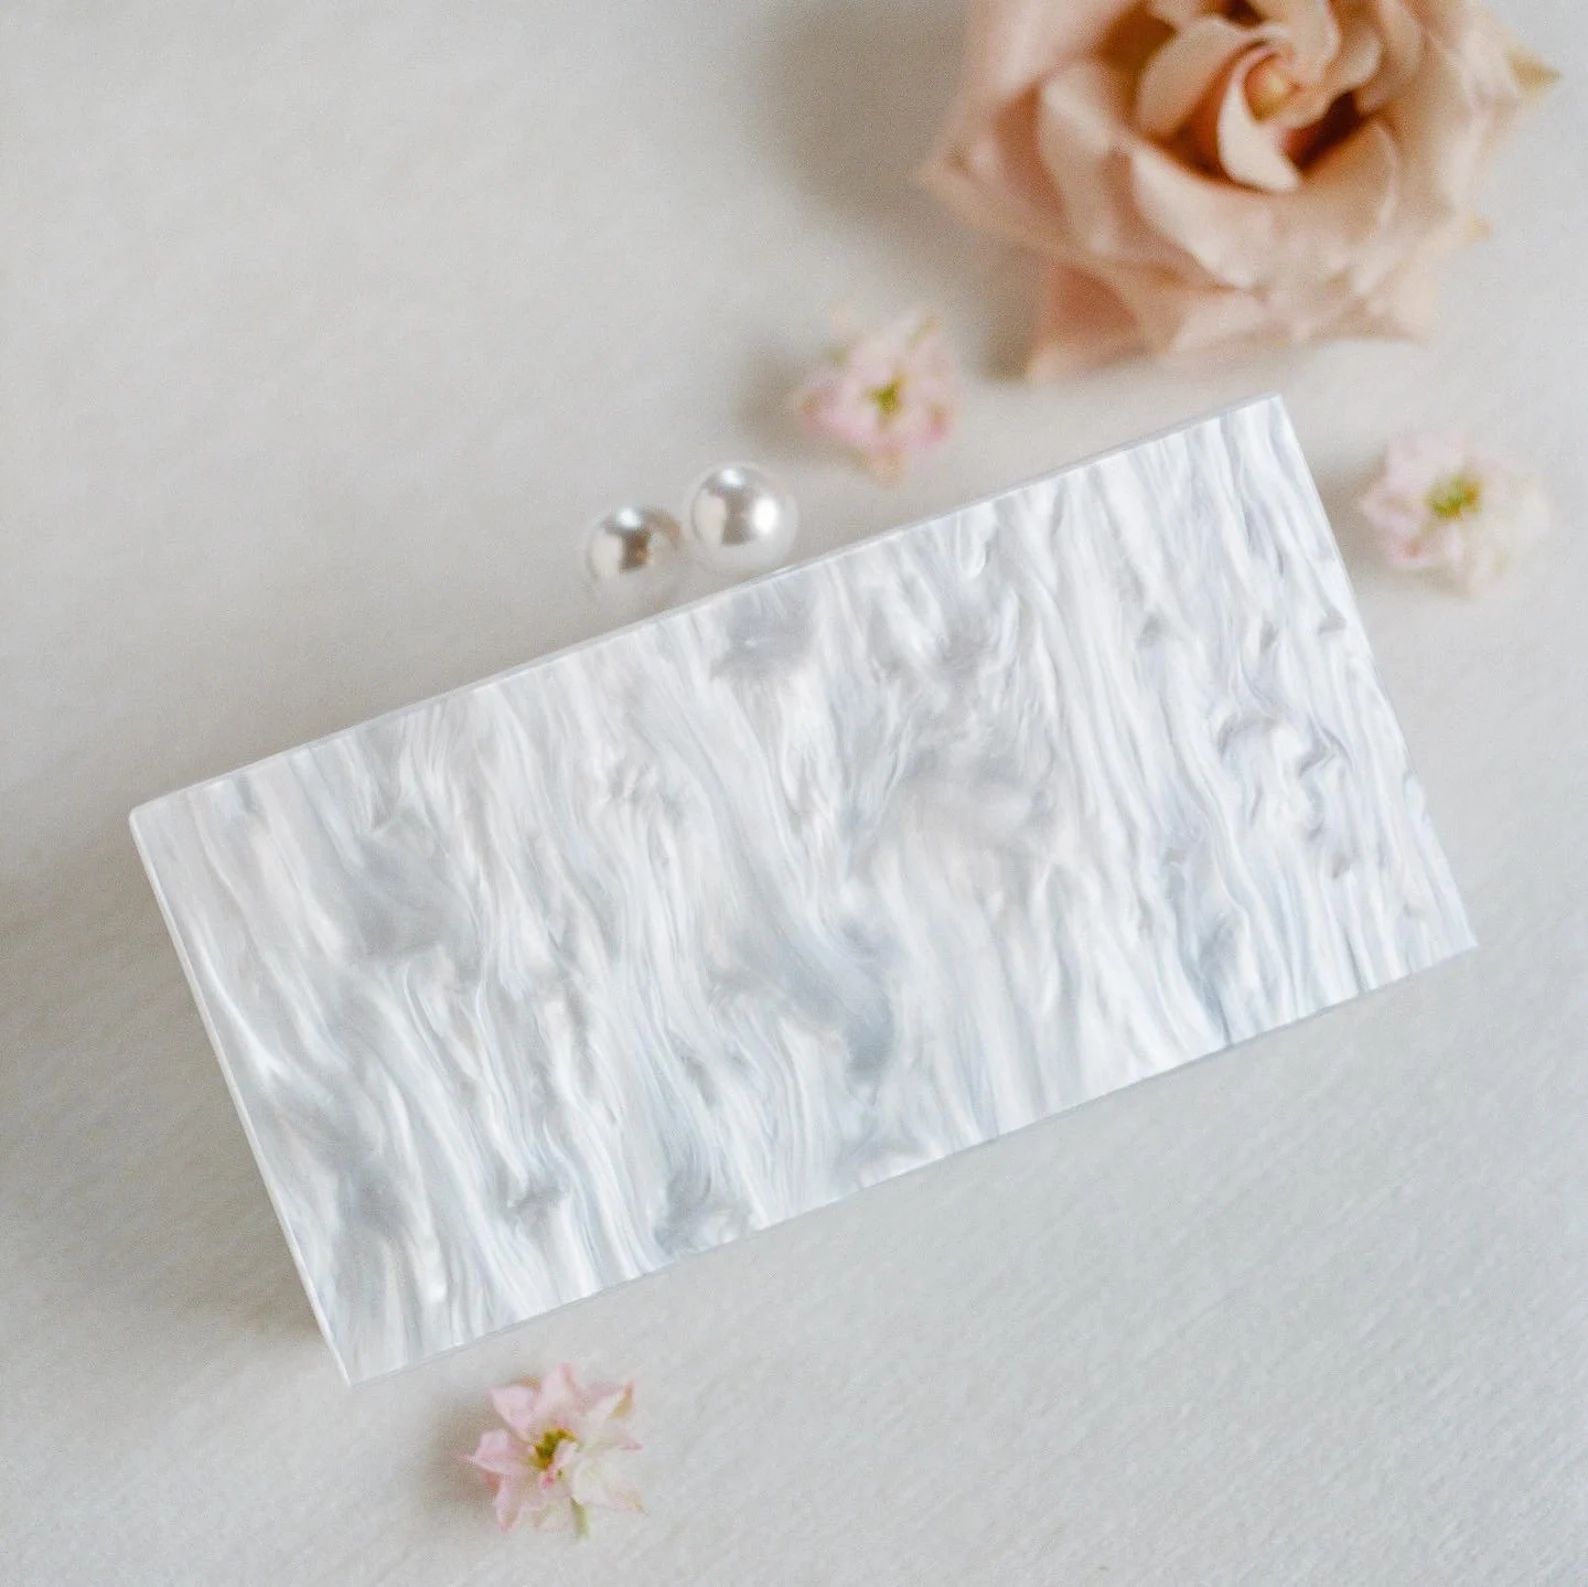 White Pearl Acrylic Box Clutch with Pearls, Handbags Women, Wedding Day Purse, Bridal Bag, Clutch... | Etsy (US)